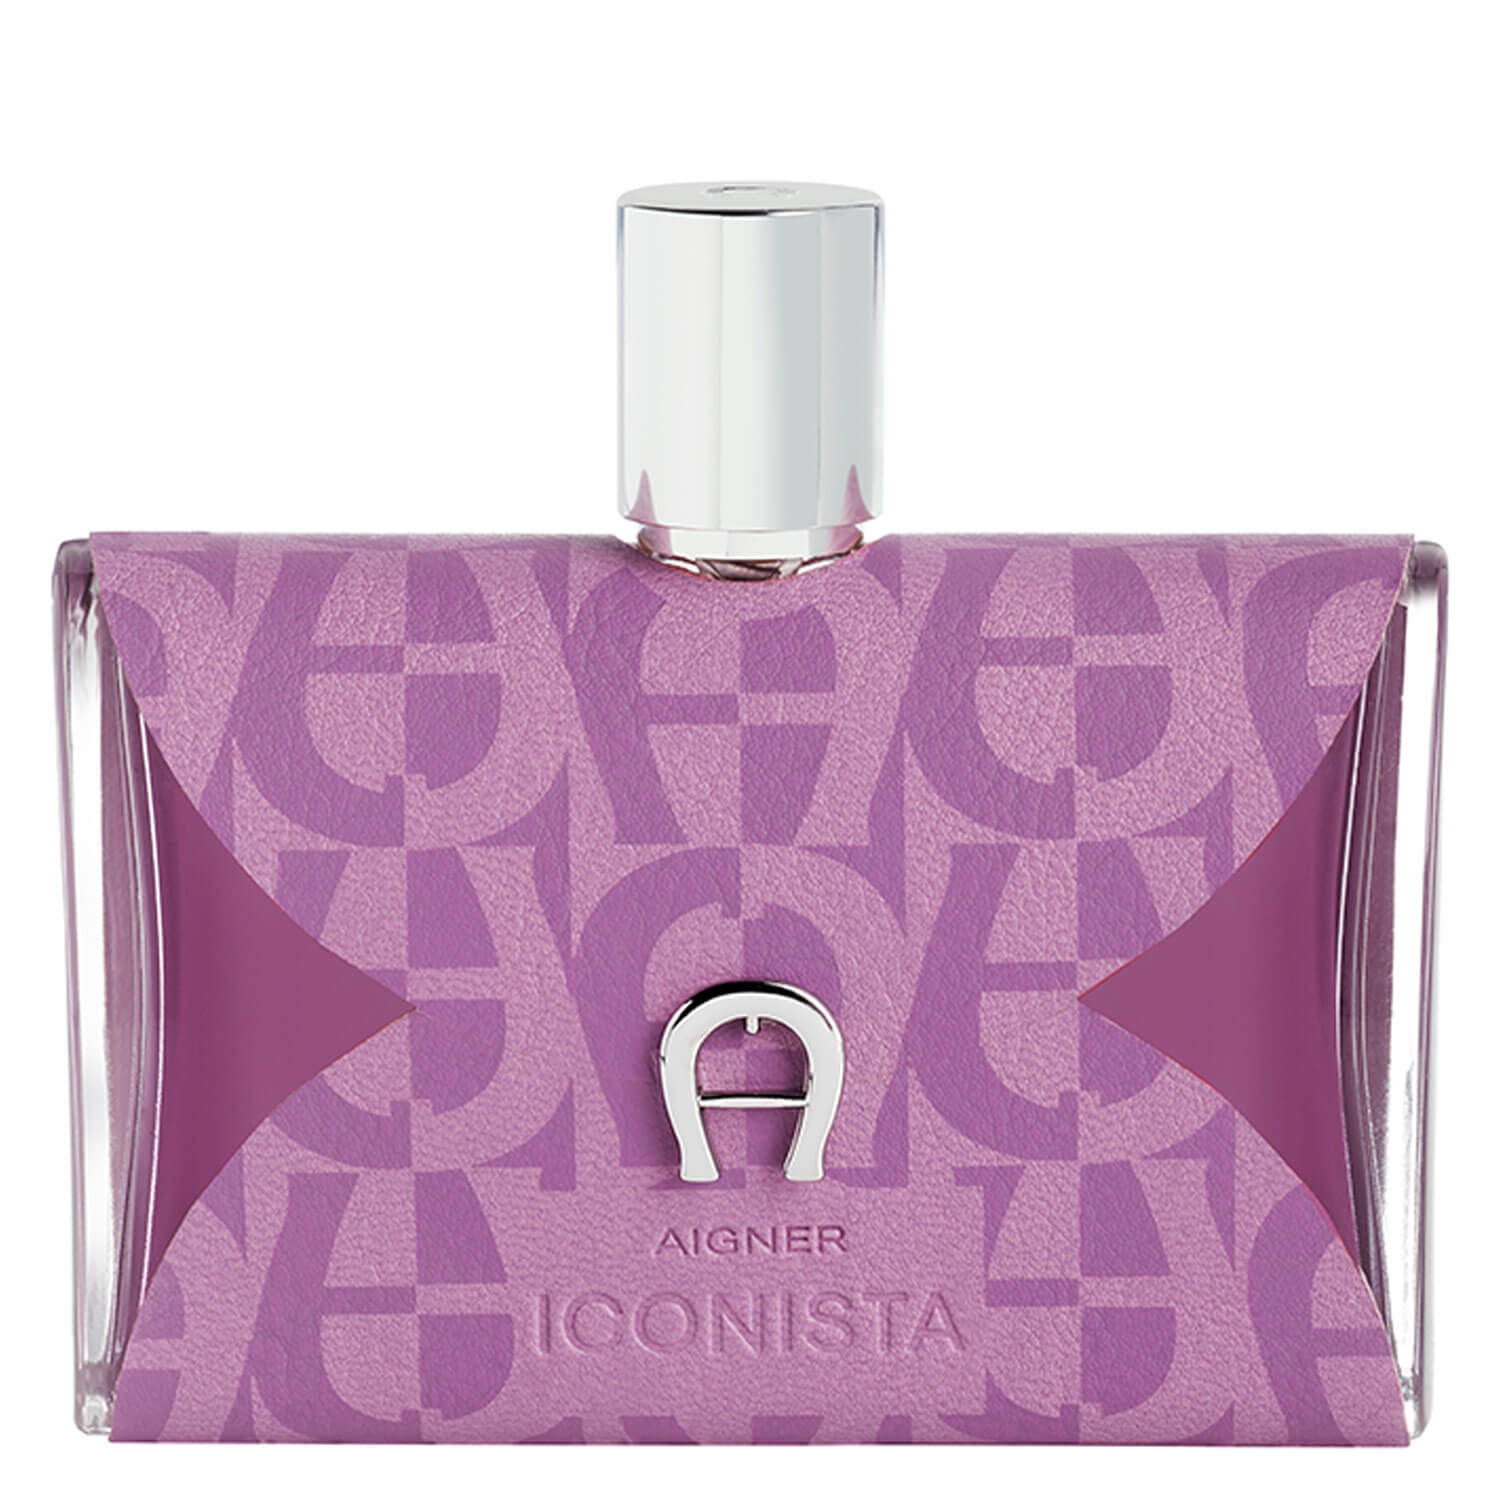 Product image from Aigner - Iconista Eau de Parfum